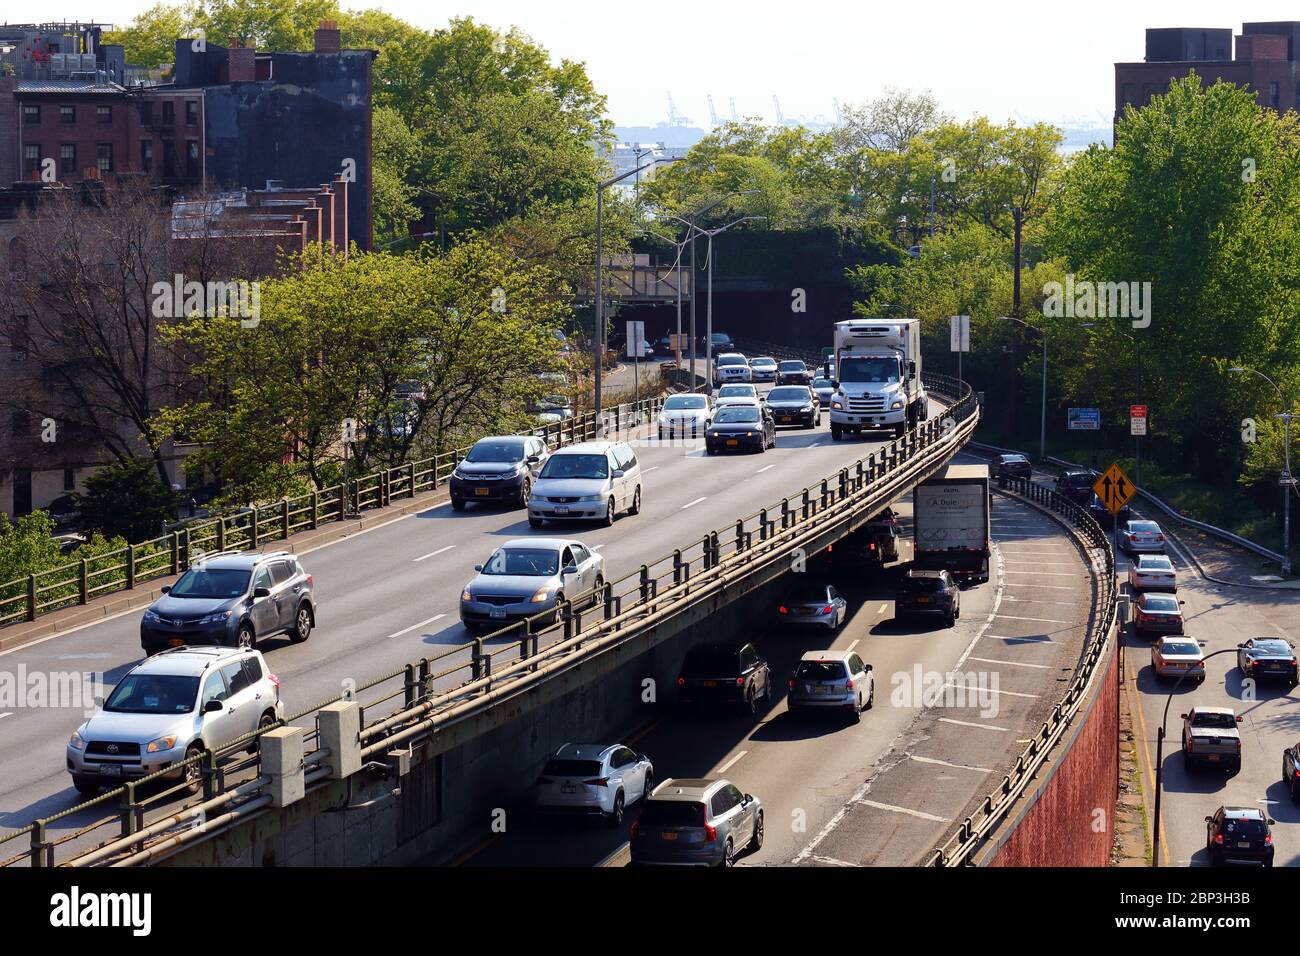 Una sección de "triple voladizo" de la autopista Brooklyn-Queens Expressway (BQE) Interstate 278 en el barrio Brooklyn Heights de Brooklyn, Nueva York. Foto de stock